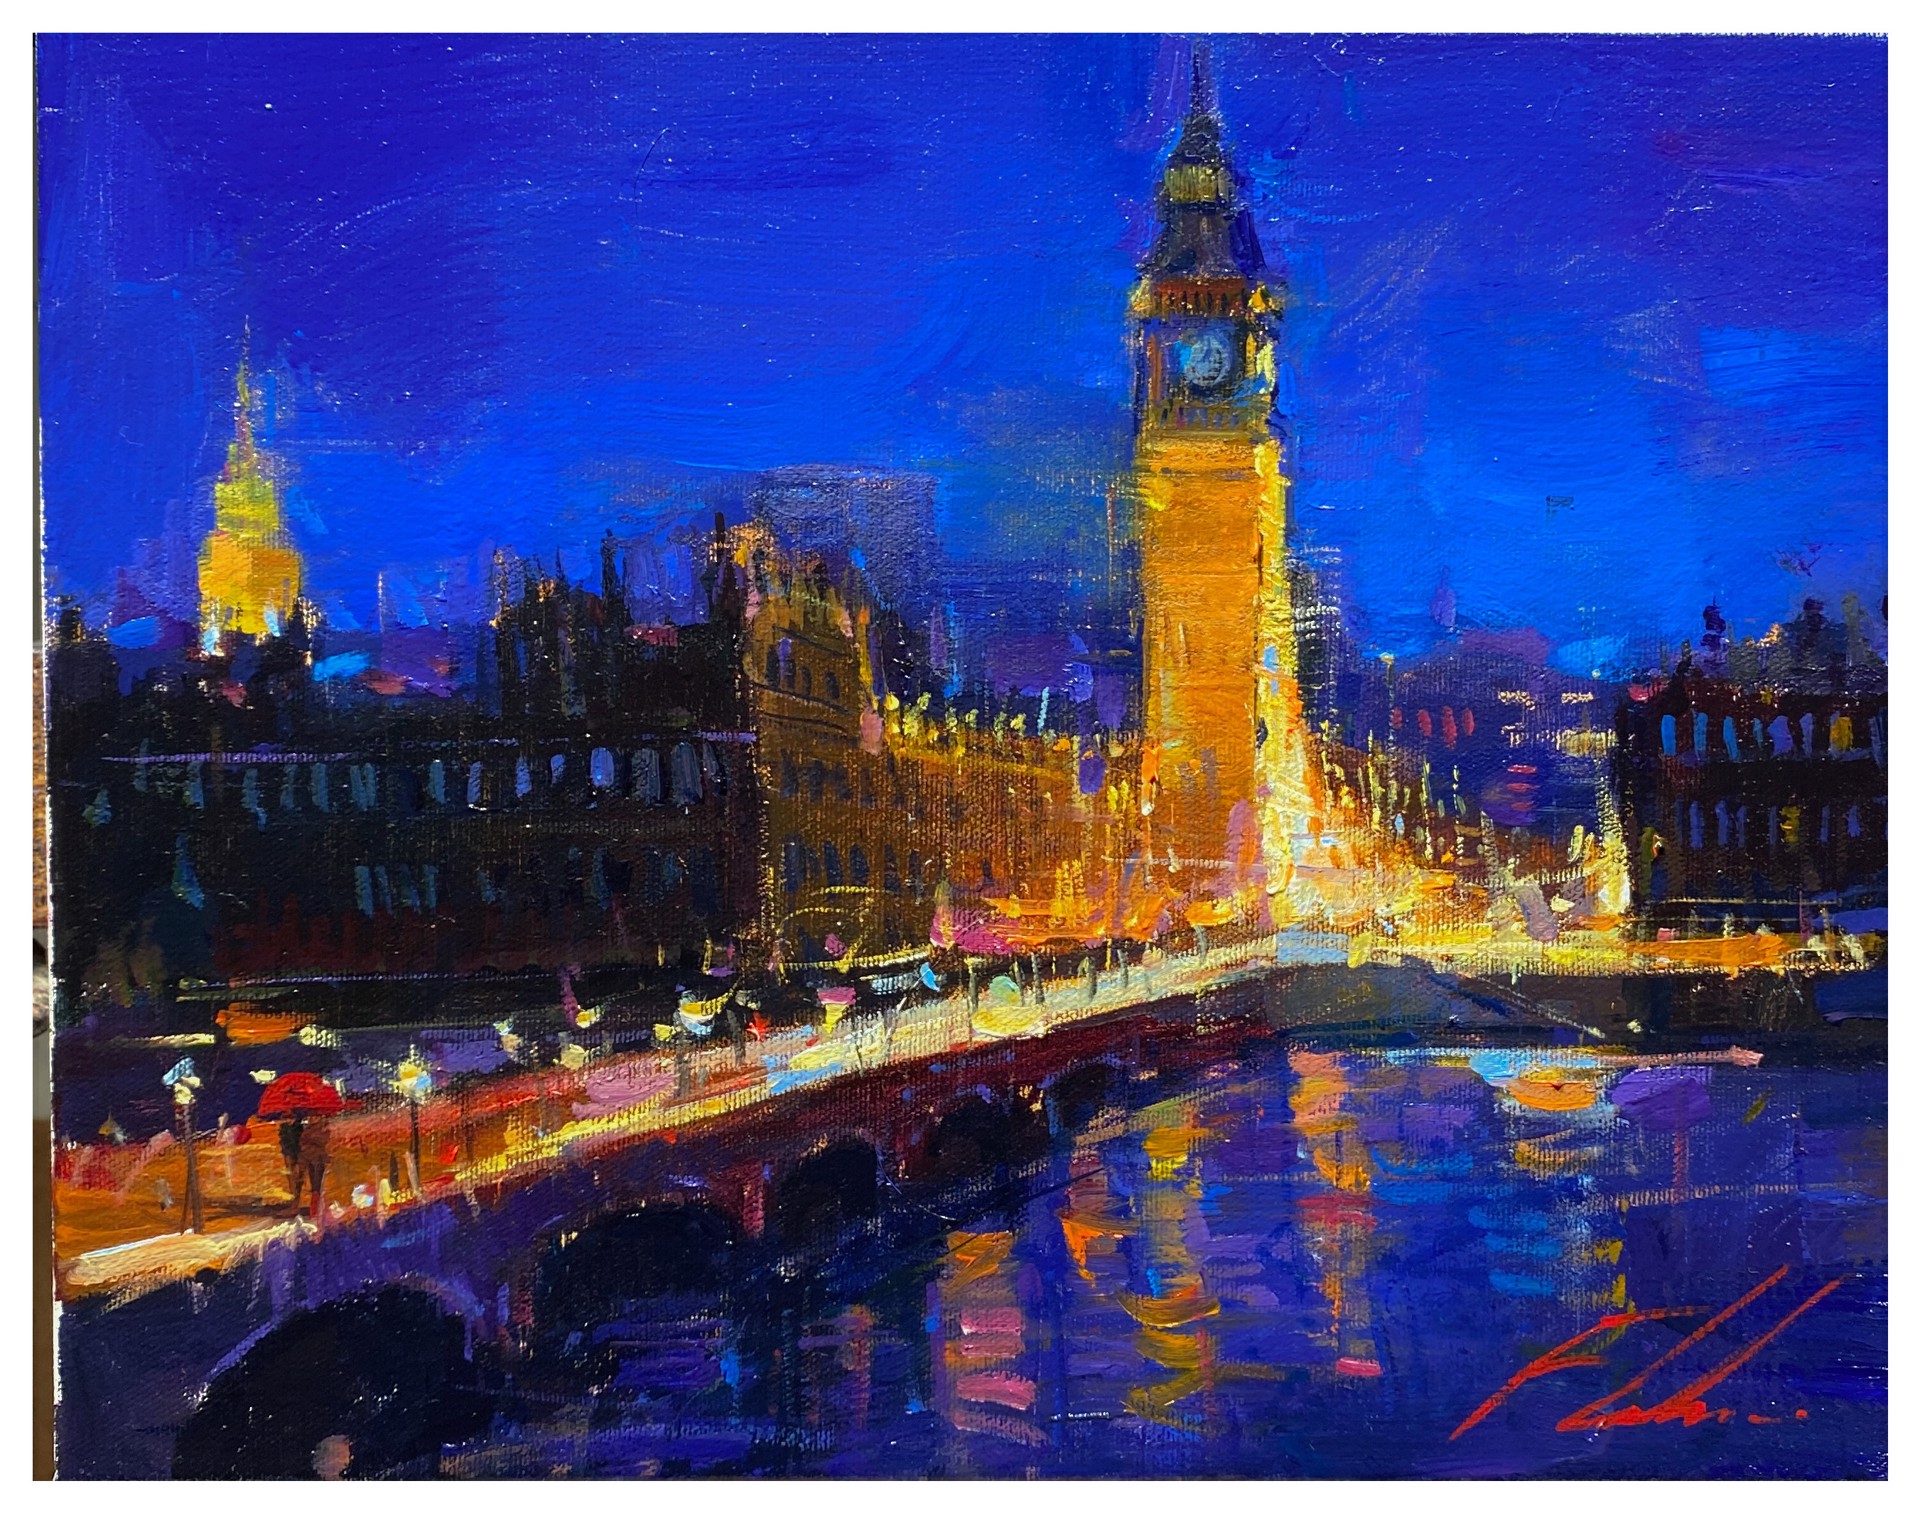 London Bridge Revisit by Michael Flohr